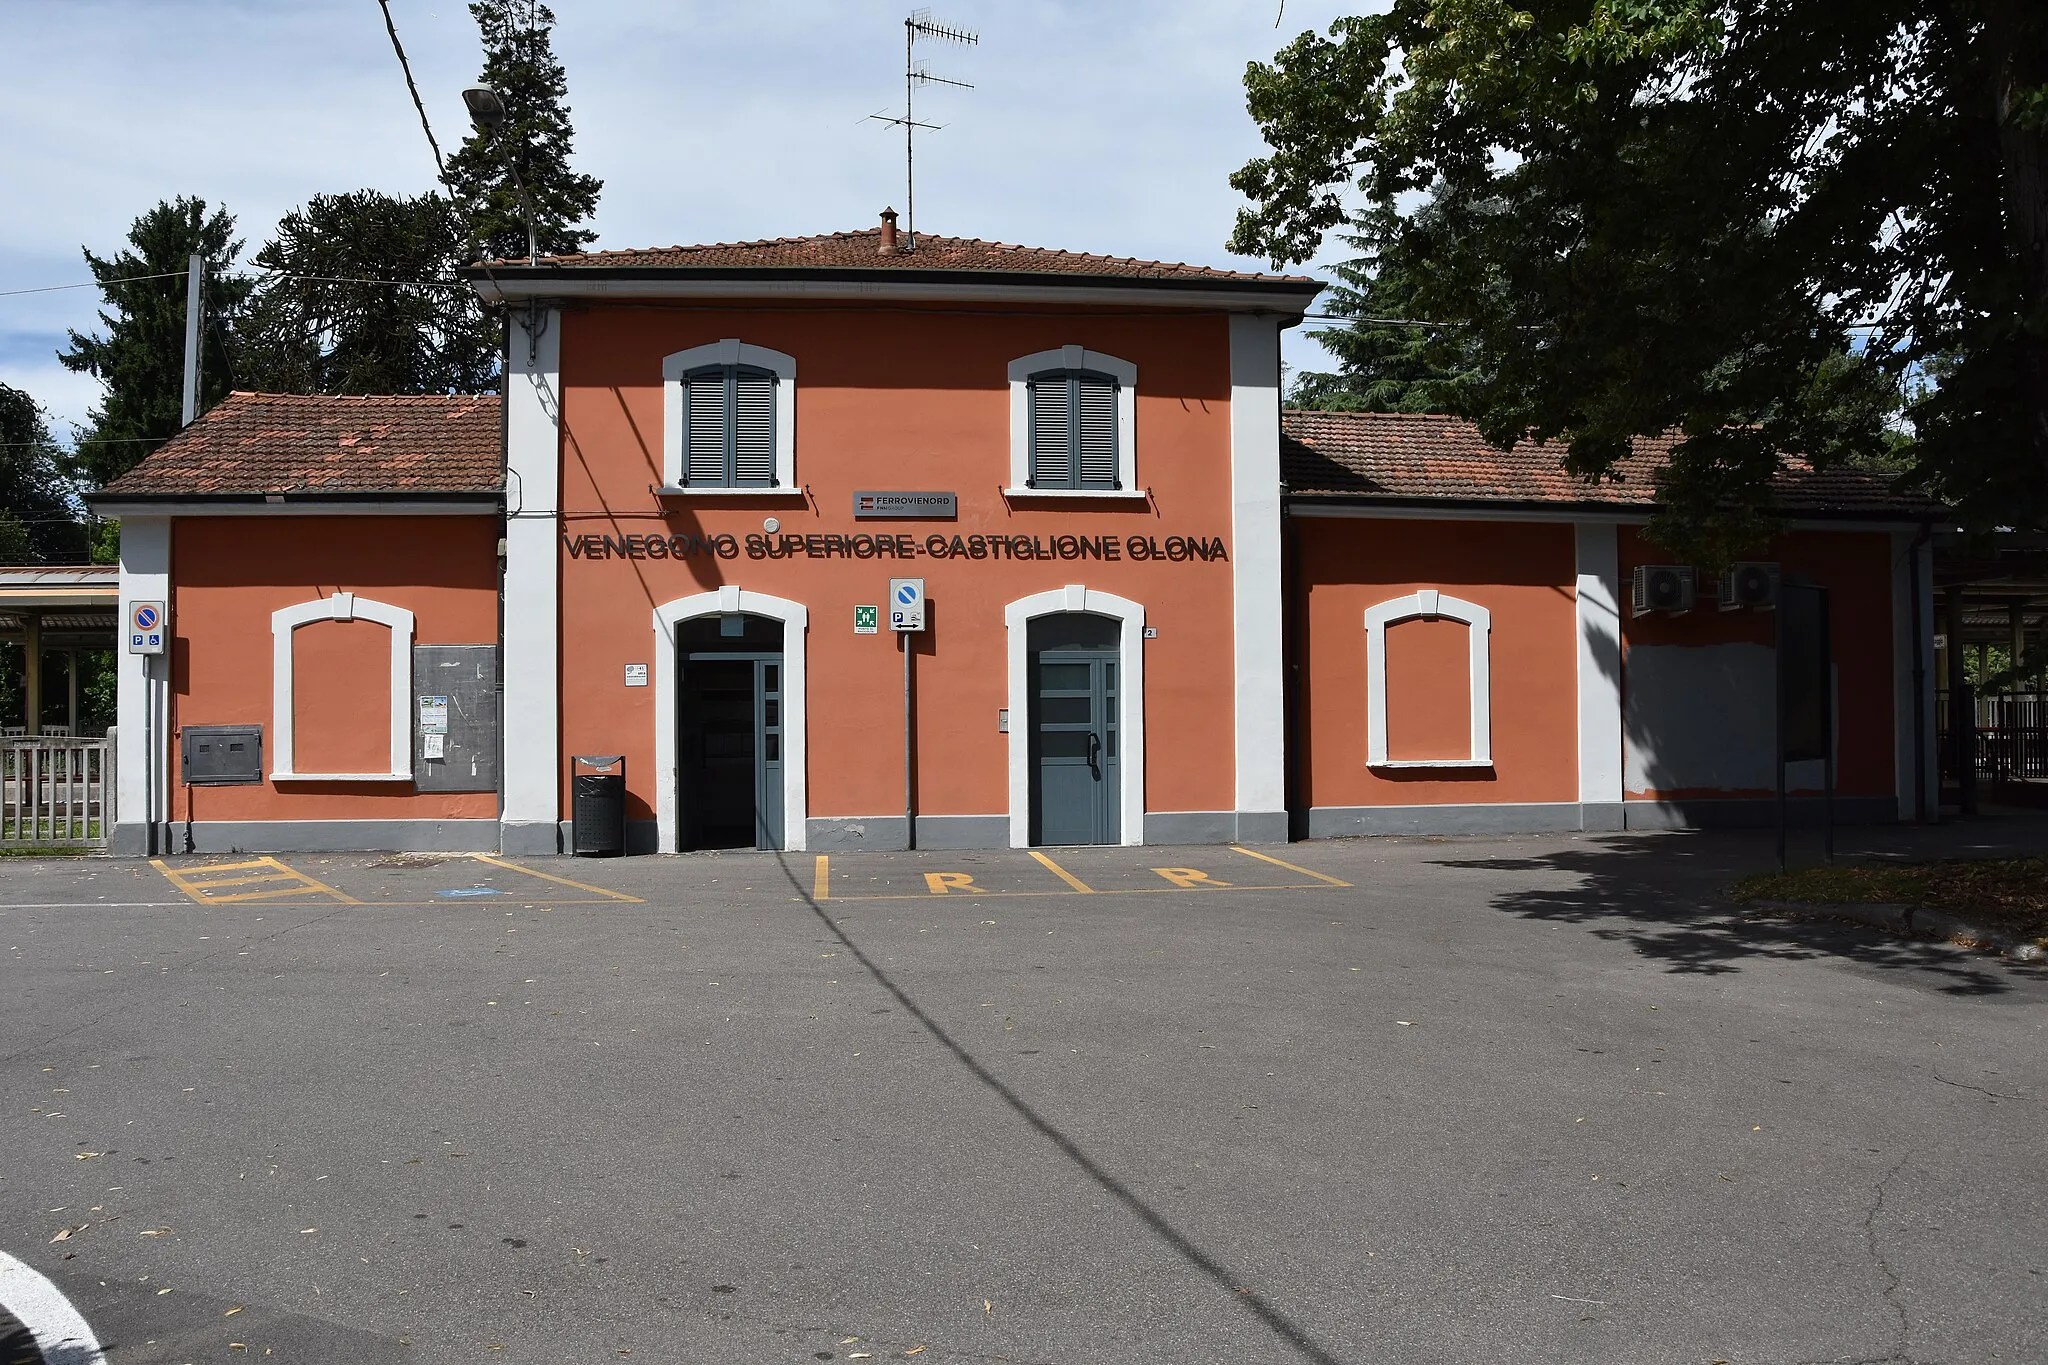 Photo showing: La stazione di Venegono Superiore-Castiglione Olona, situata nel comune di Venegono Superiore, in provincia di Varese.